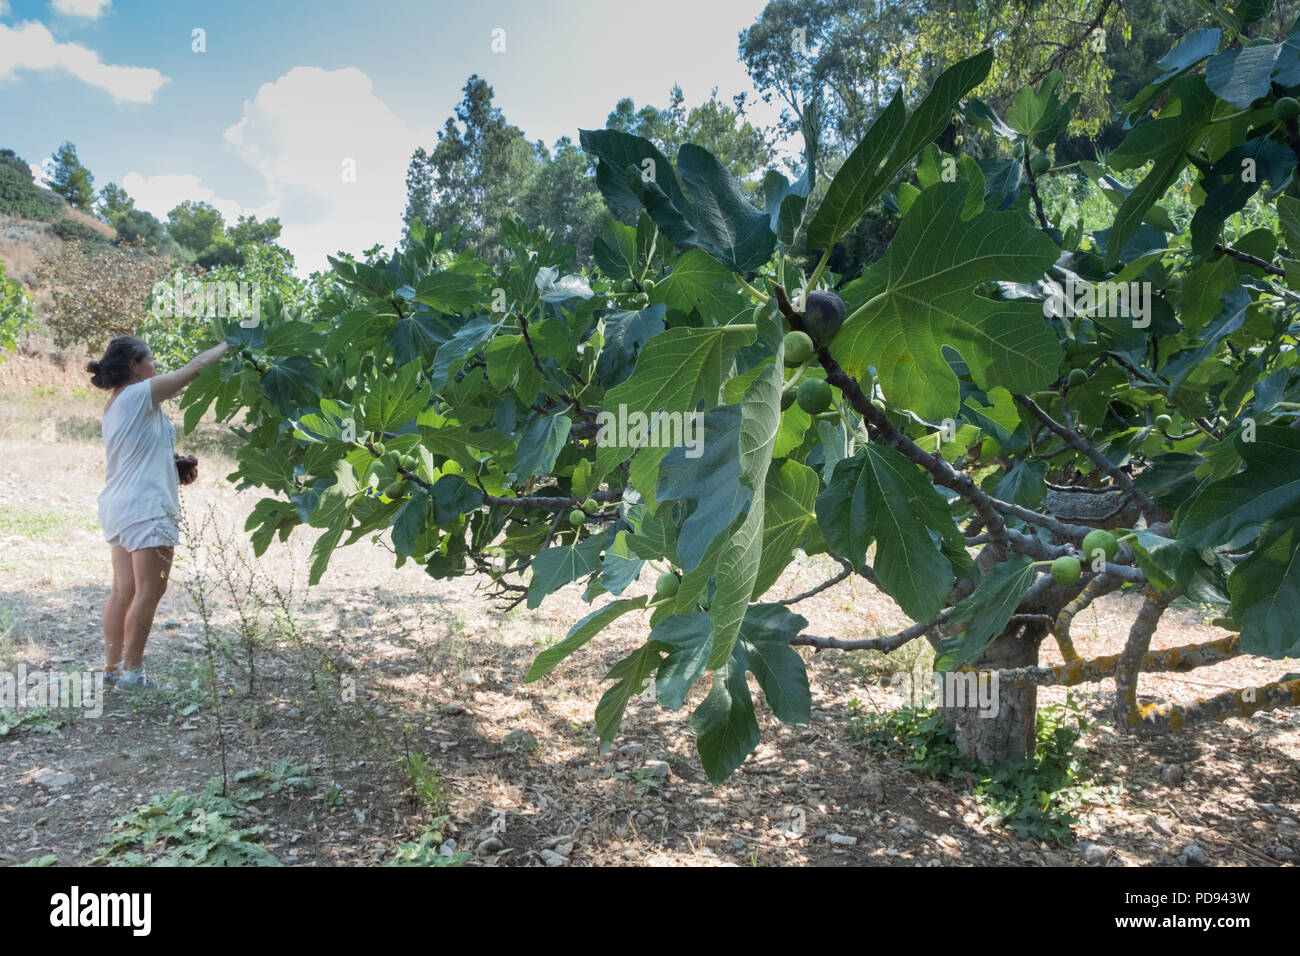 Junge Dame person Kommissionierung frisch sonnengereiften Feigen (Ficus Carica) Obst besser als gemeinsames Bild, Saronida, Ost Attika, Griechenland, Europa bekannt. Stockfoto